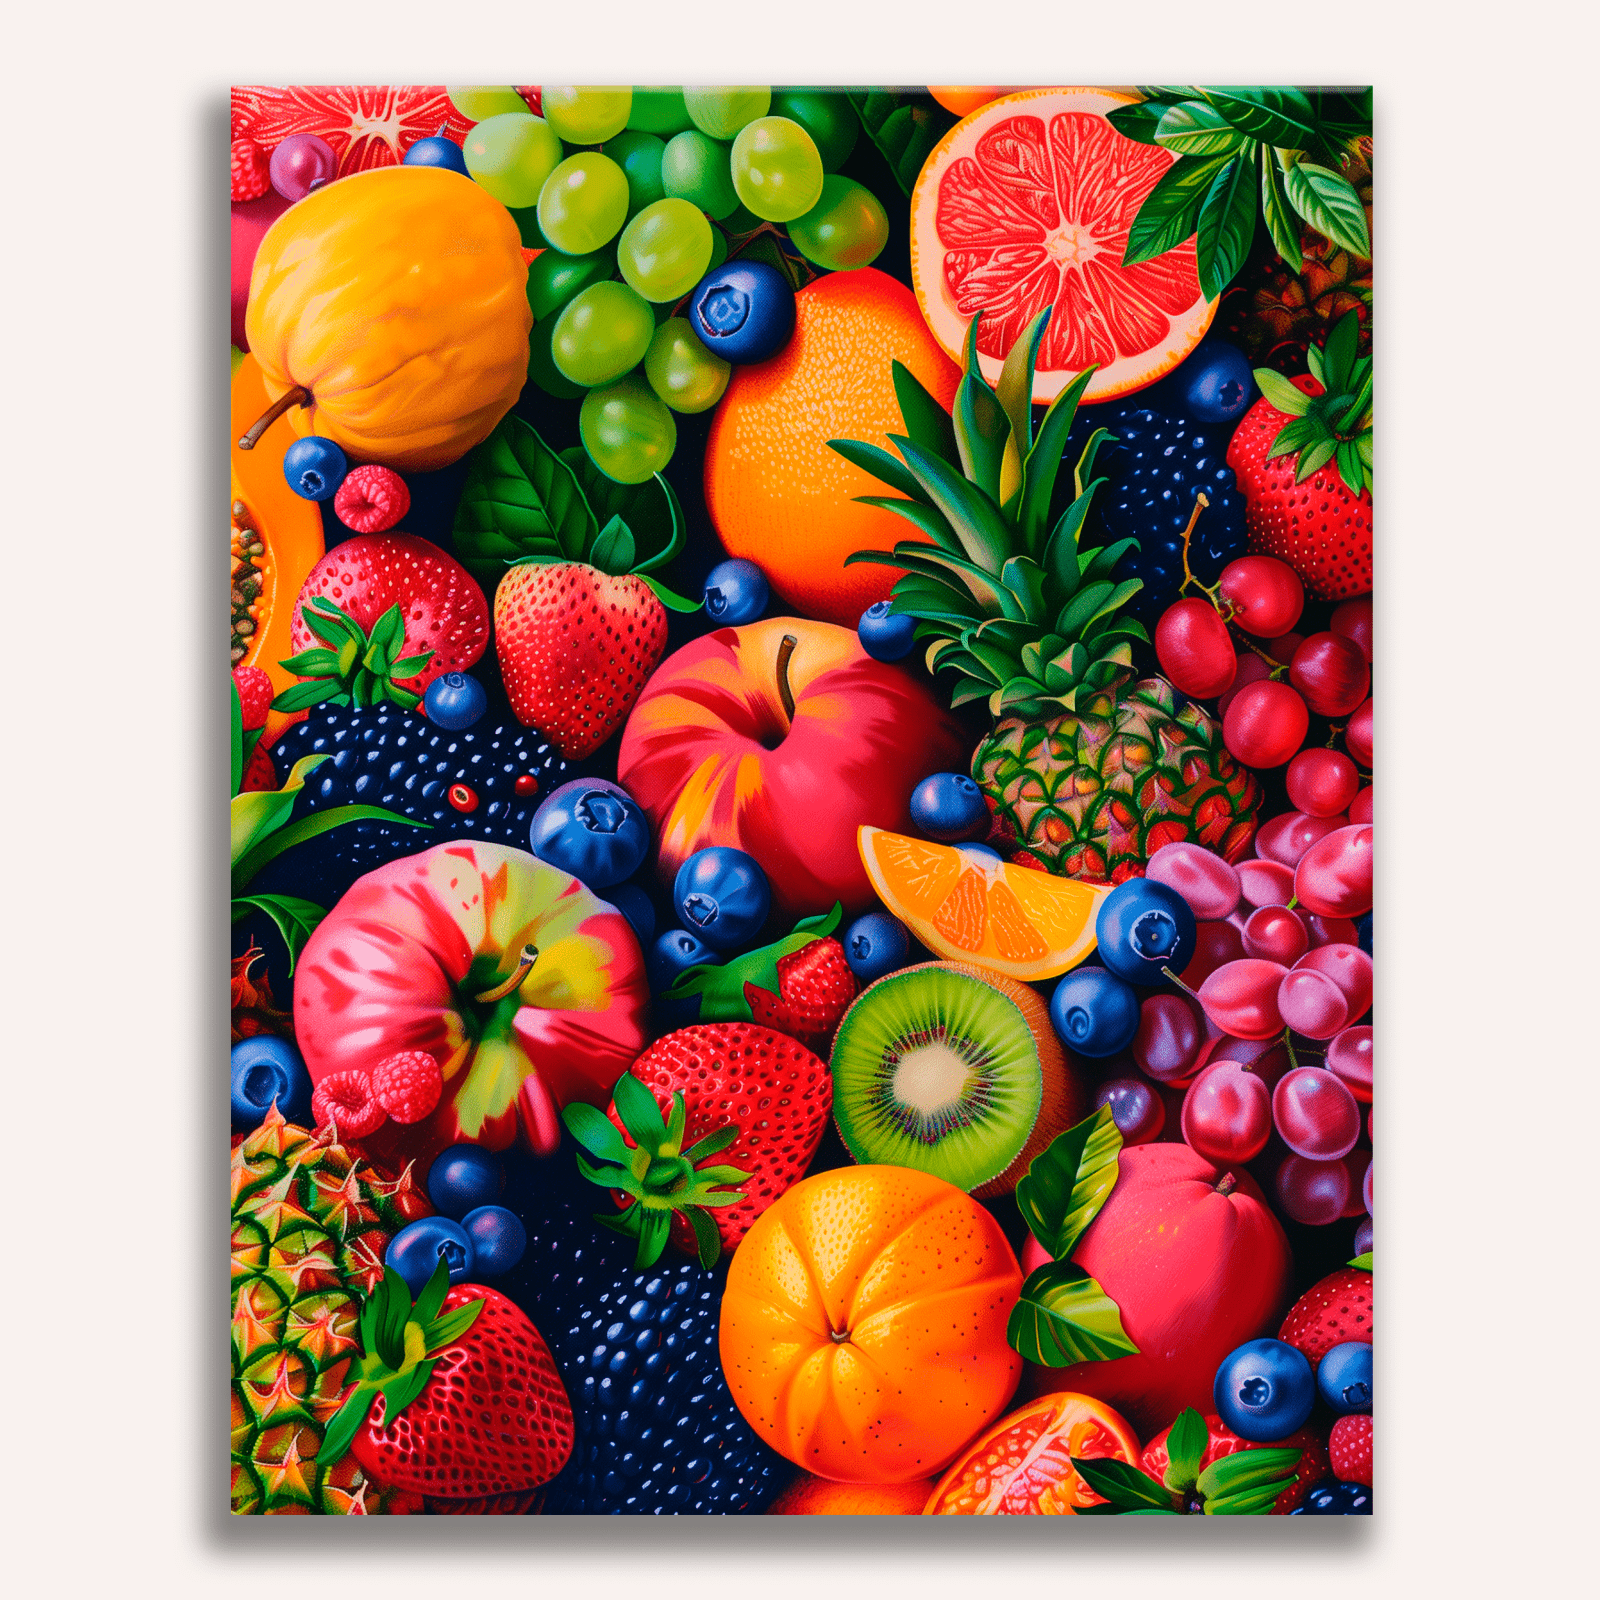 Fruit Rhapsody